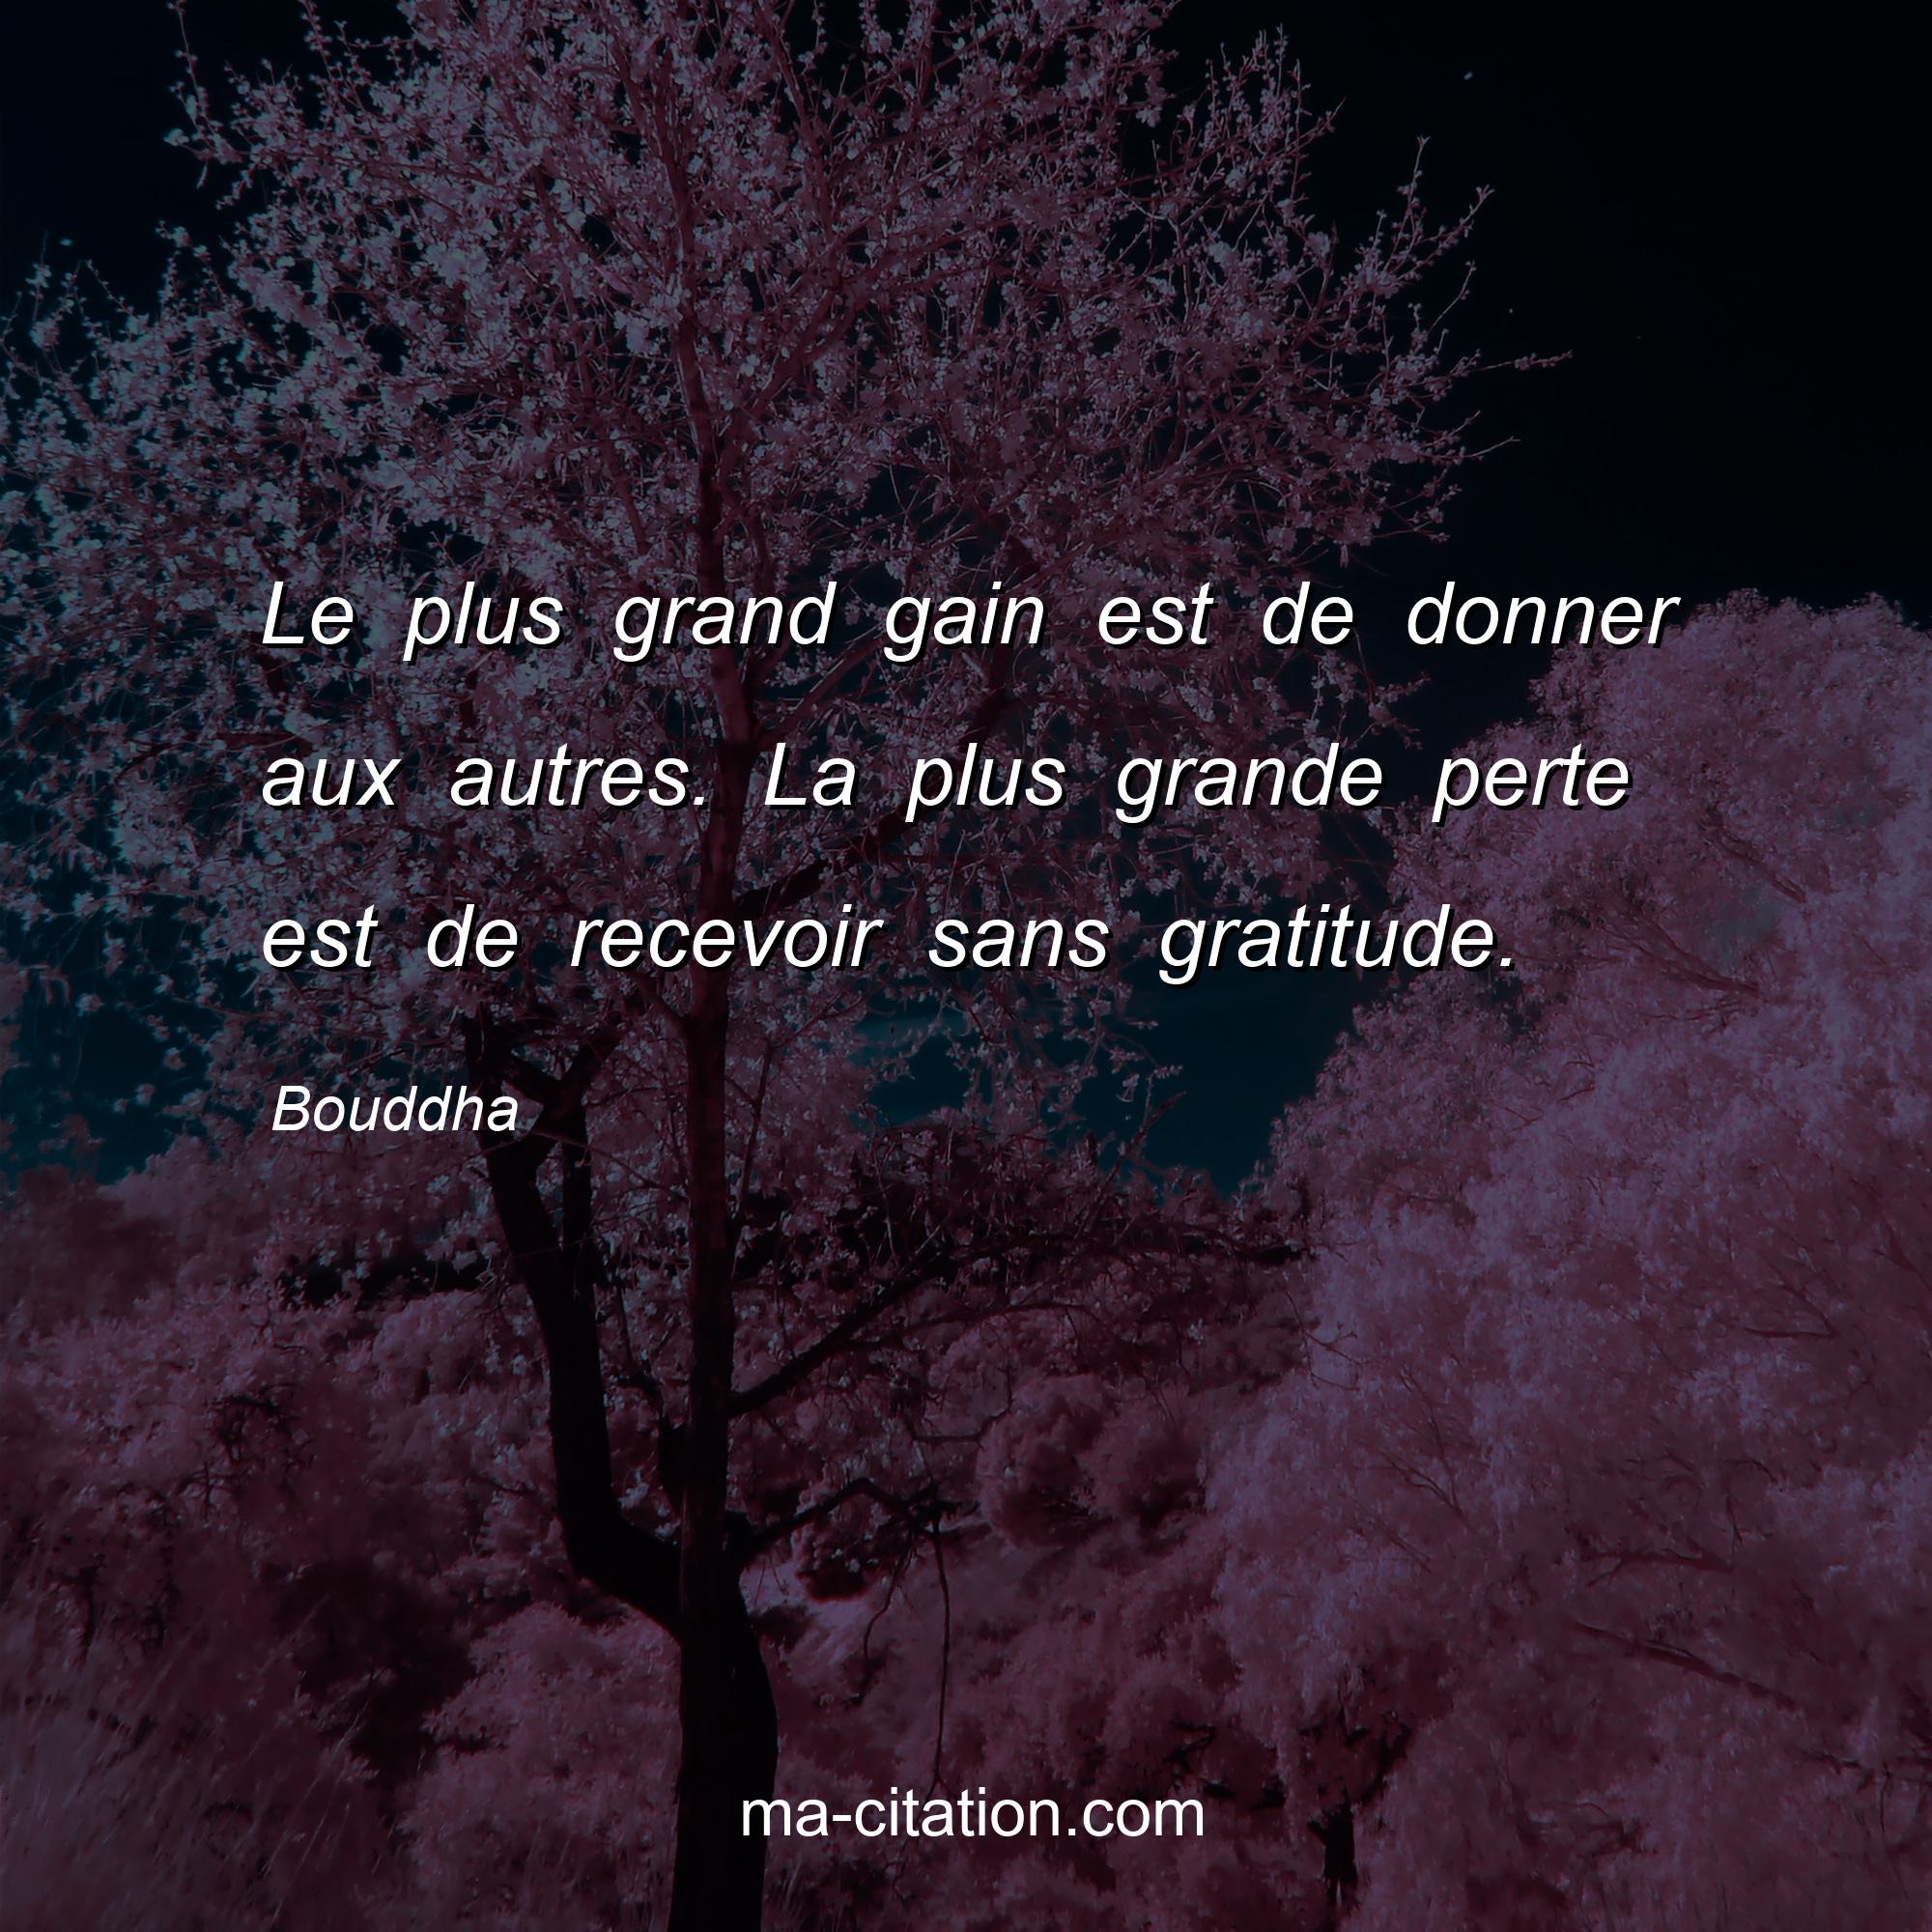 Bouddha : Le plus grand gain est de donner aux autres. La plus grande perte est de recevoir sans gratitude.